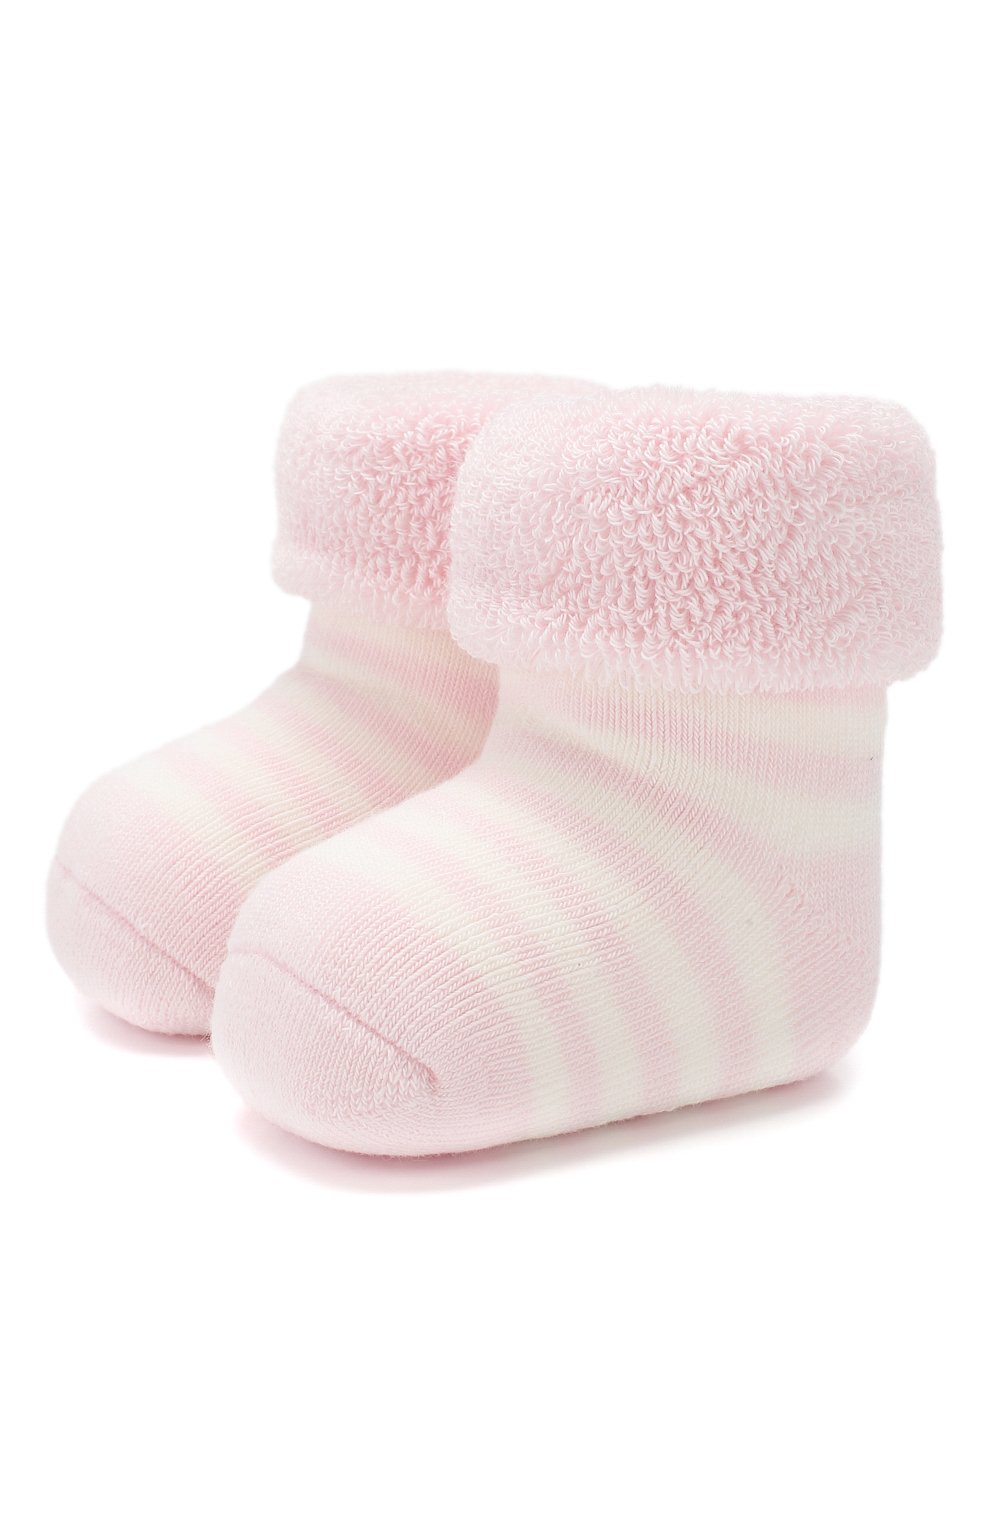 Детские хлопковые носки FALKE светло-розового цвета, арт. 10040 | Фото 1 (Материал: Текстиль, Хлопок)